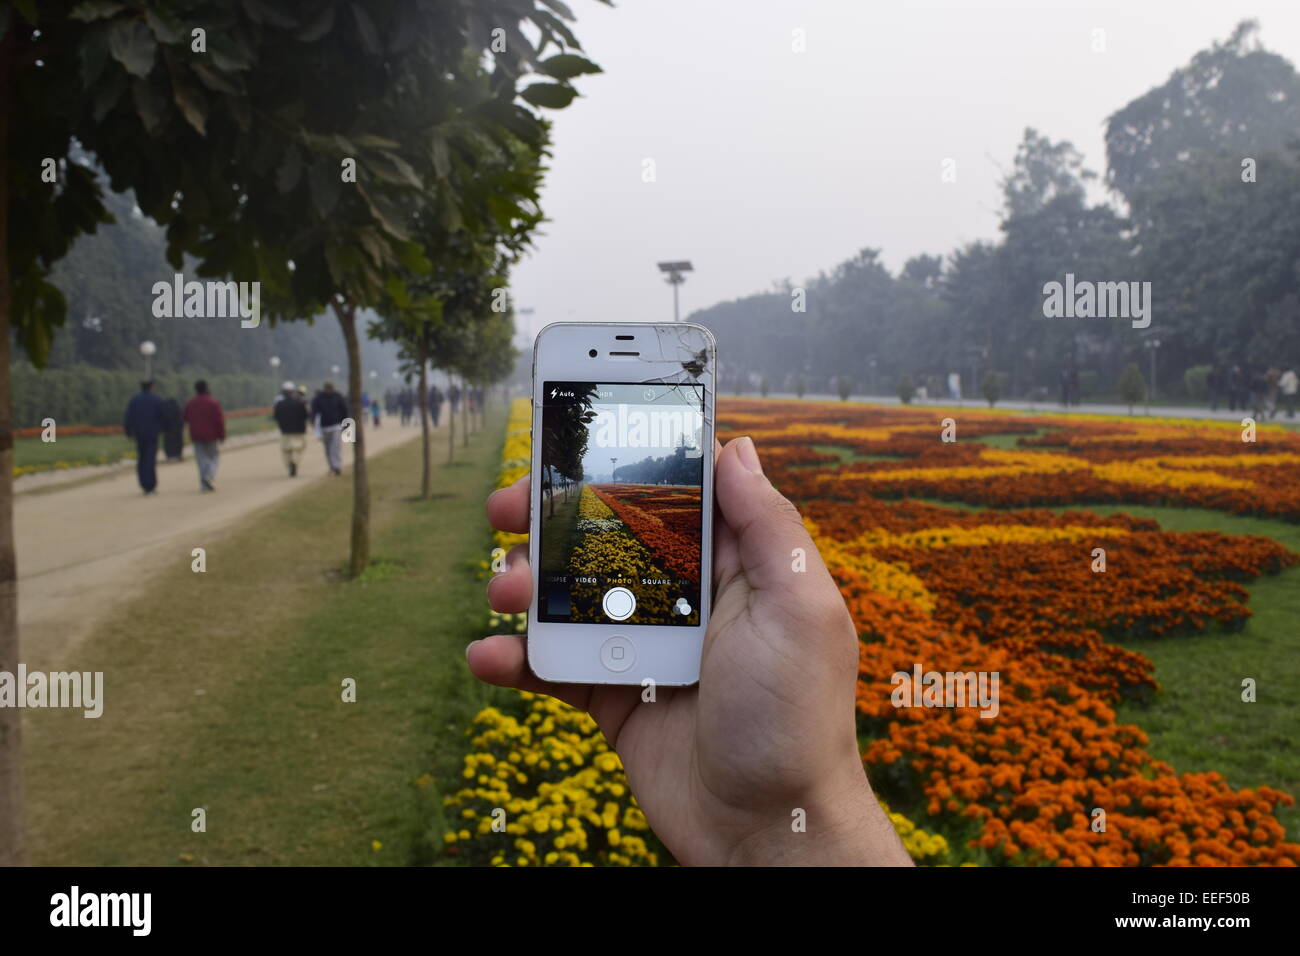 Volkspark: Foto mit einem gebrochenen Iphone in einem öffentlichen Park Stockfoto